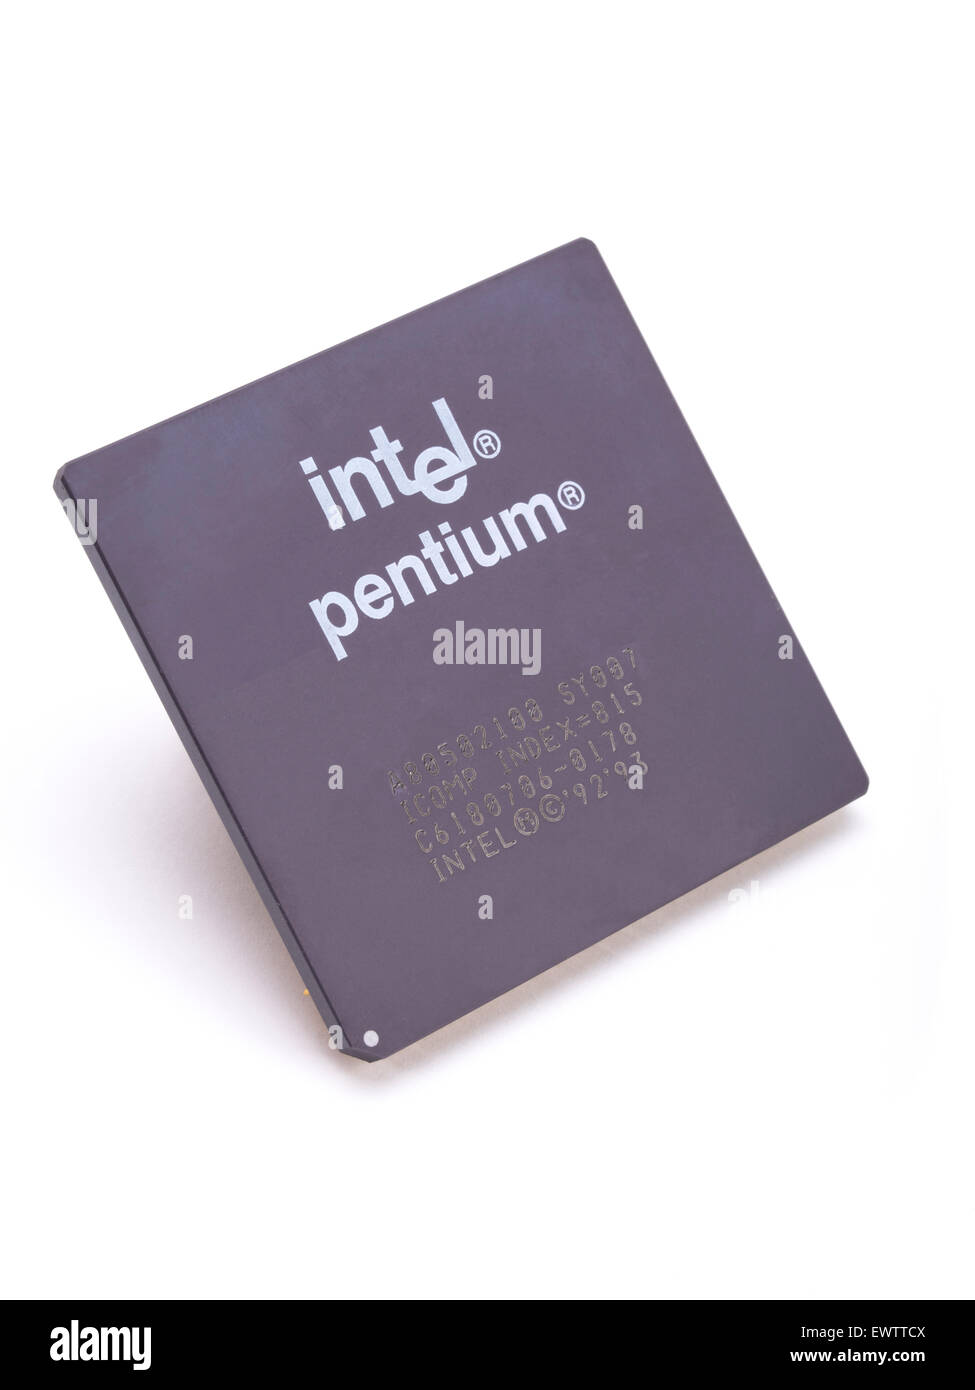 Intel Pentium 100mhz cpu chip A80502100 1994 Stock Photo